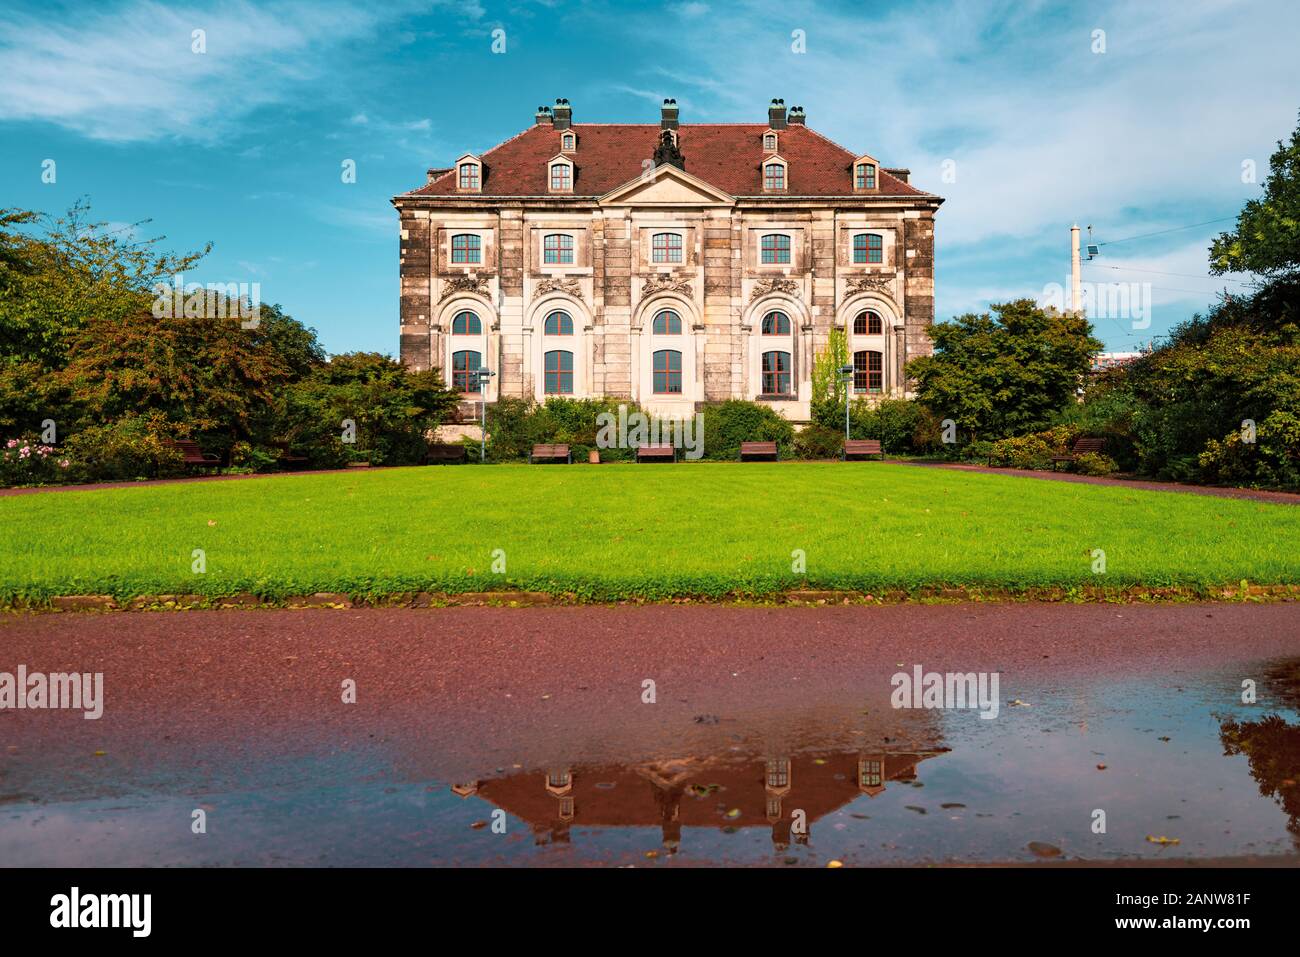 Vieille maison avec pelouse verte à Dresde, Allemagne. Flaque d'eau avec reflet en premier plan et bleu ciel nuageux en arrière-plan Banque D'Images